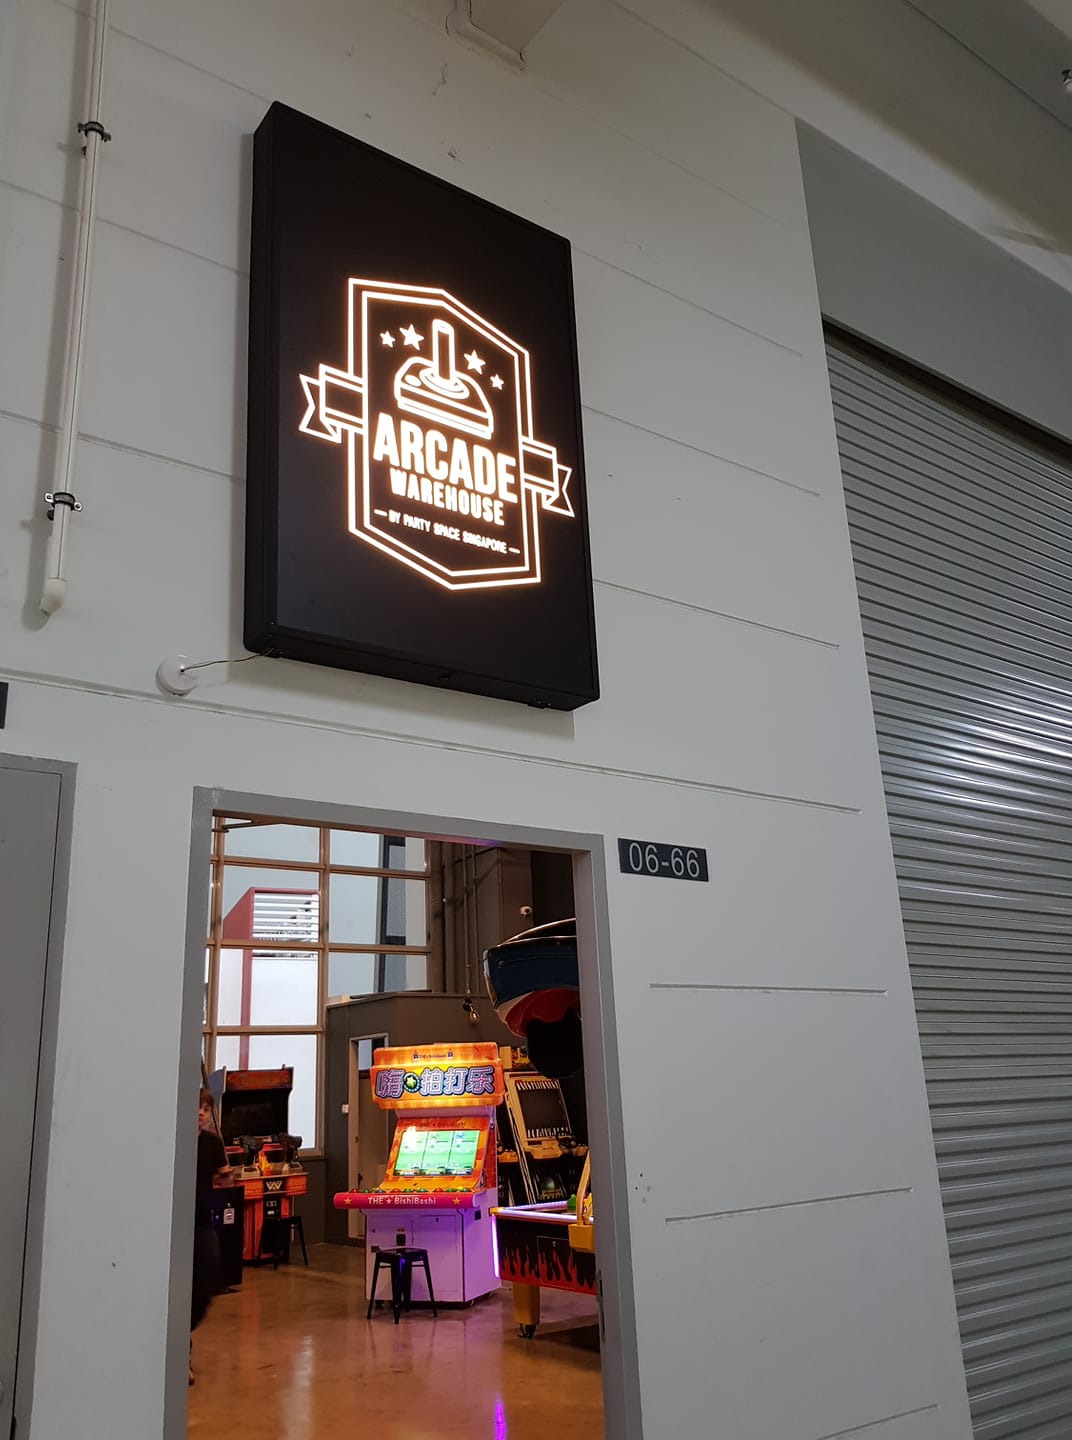 Arcade Warehouse Signage